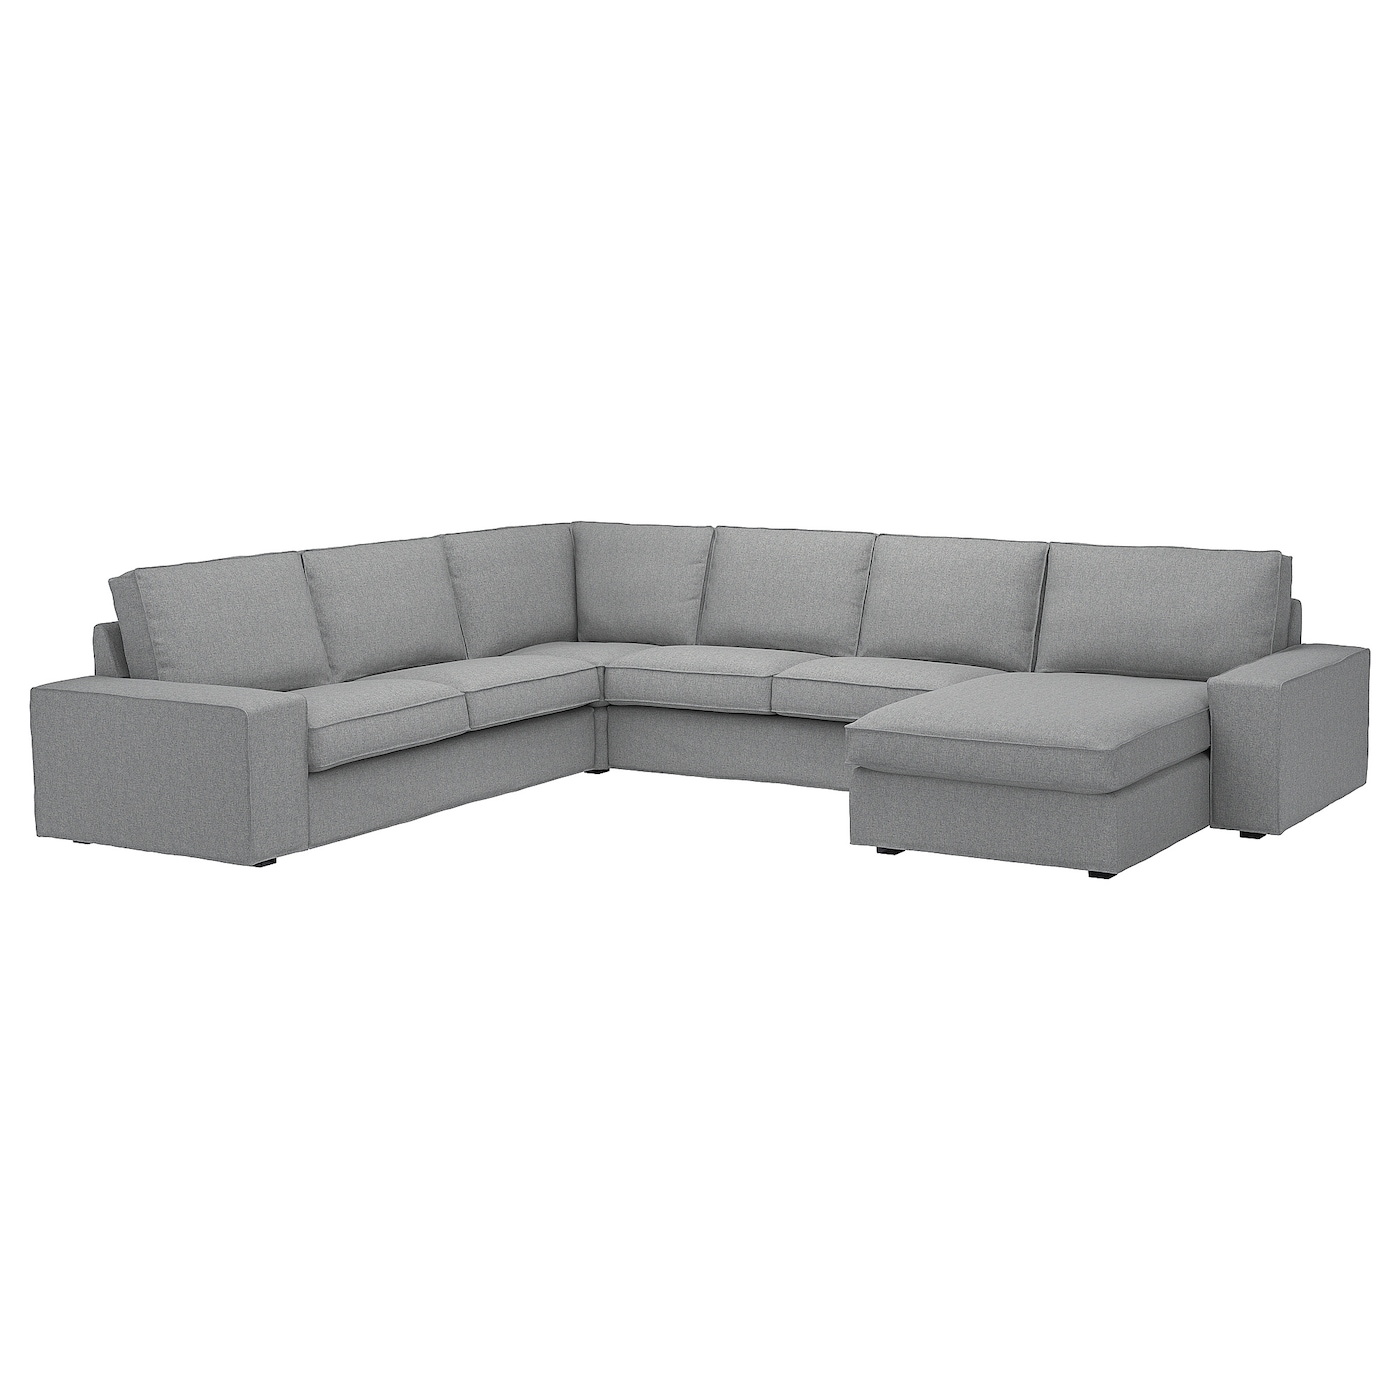 4-местный угловой диван и кушетка - IKEA KIVIK, 83x95x257/347см, серый, КИВИК ИКЕА